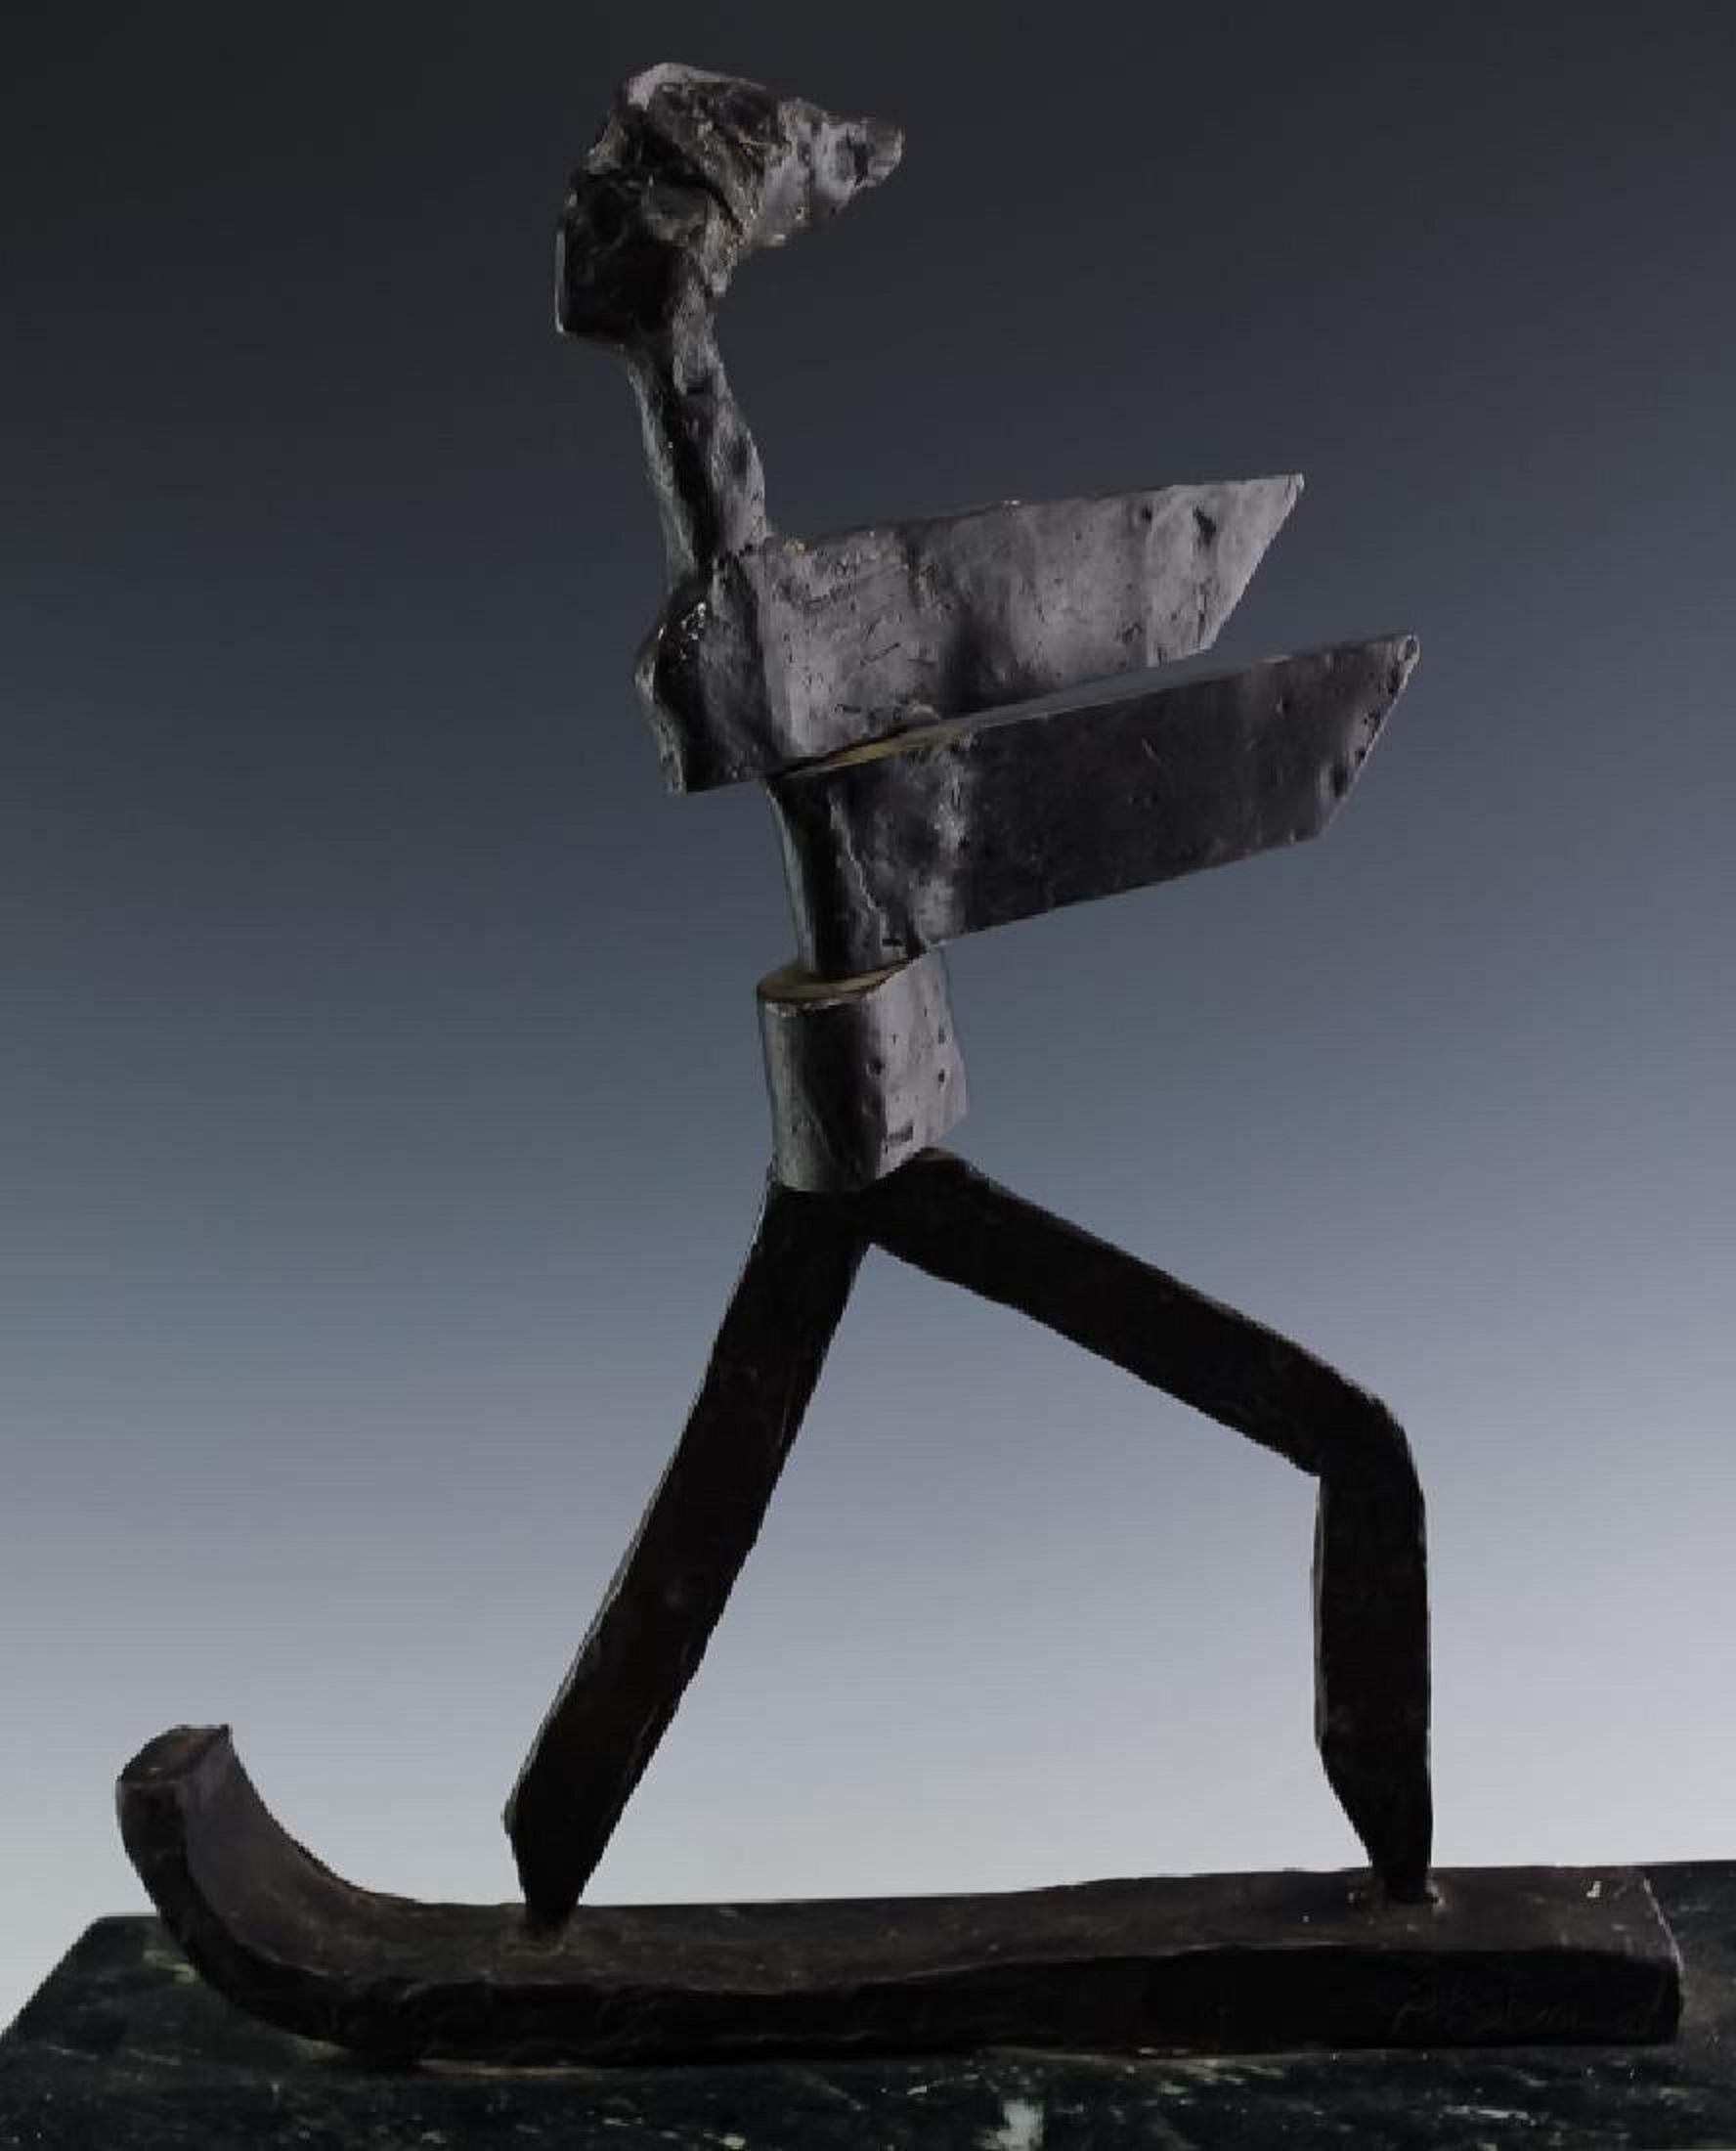 Kinetische expressionistische Bronze-Skulptur Skier oder Surfer Modernistische Sportfigur – Sculpture von J. James Akston